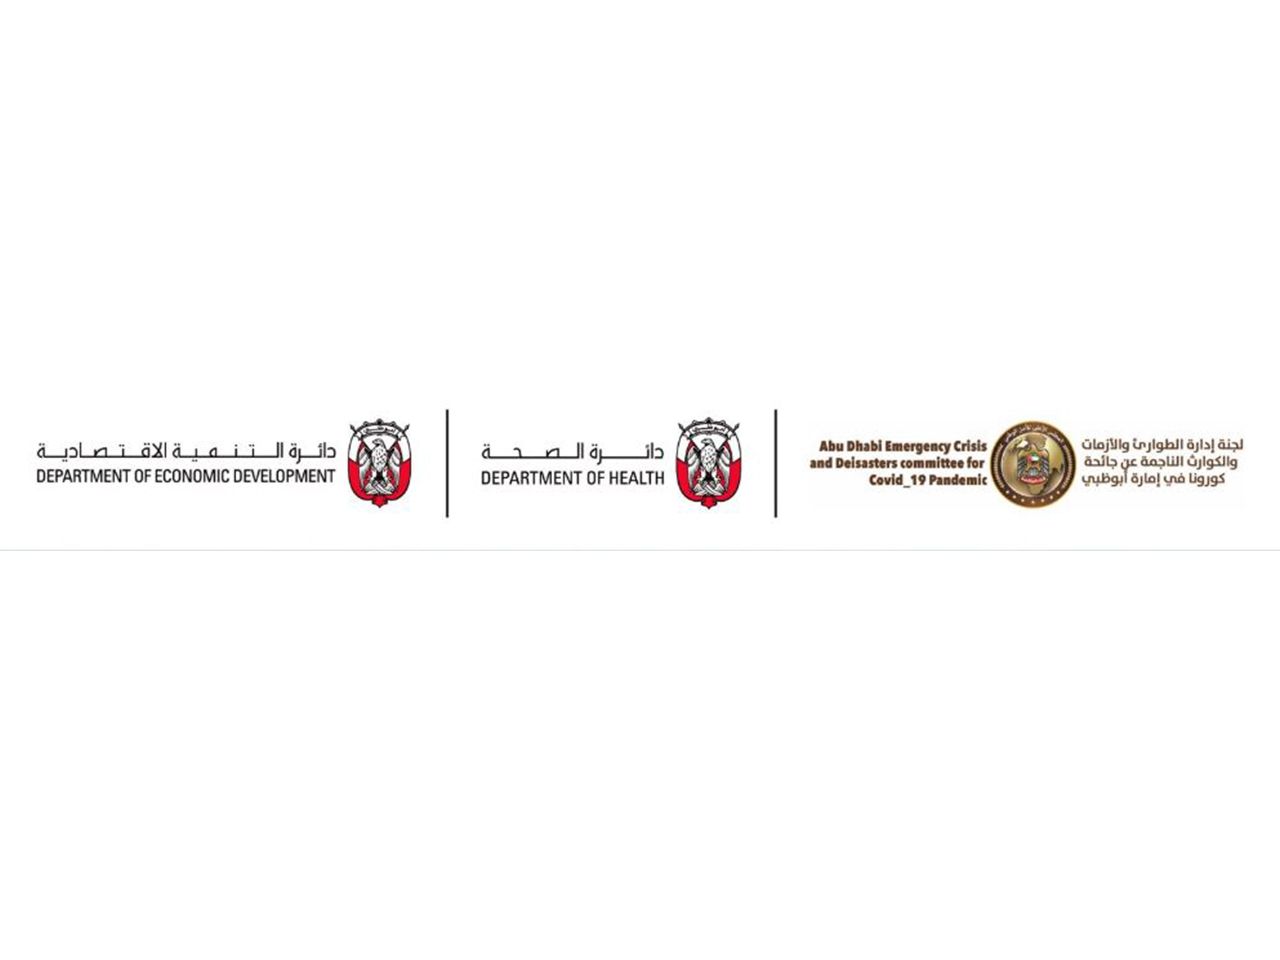 متحدہ عرب امارات اسٹیم سیل سینٹر کی جانب سے 2 ہزار سے زائد کوویڈ19 کے مریضوں کا علاج